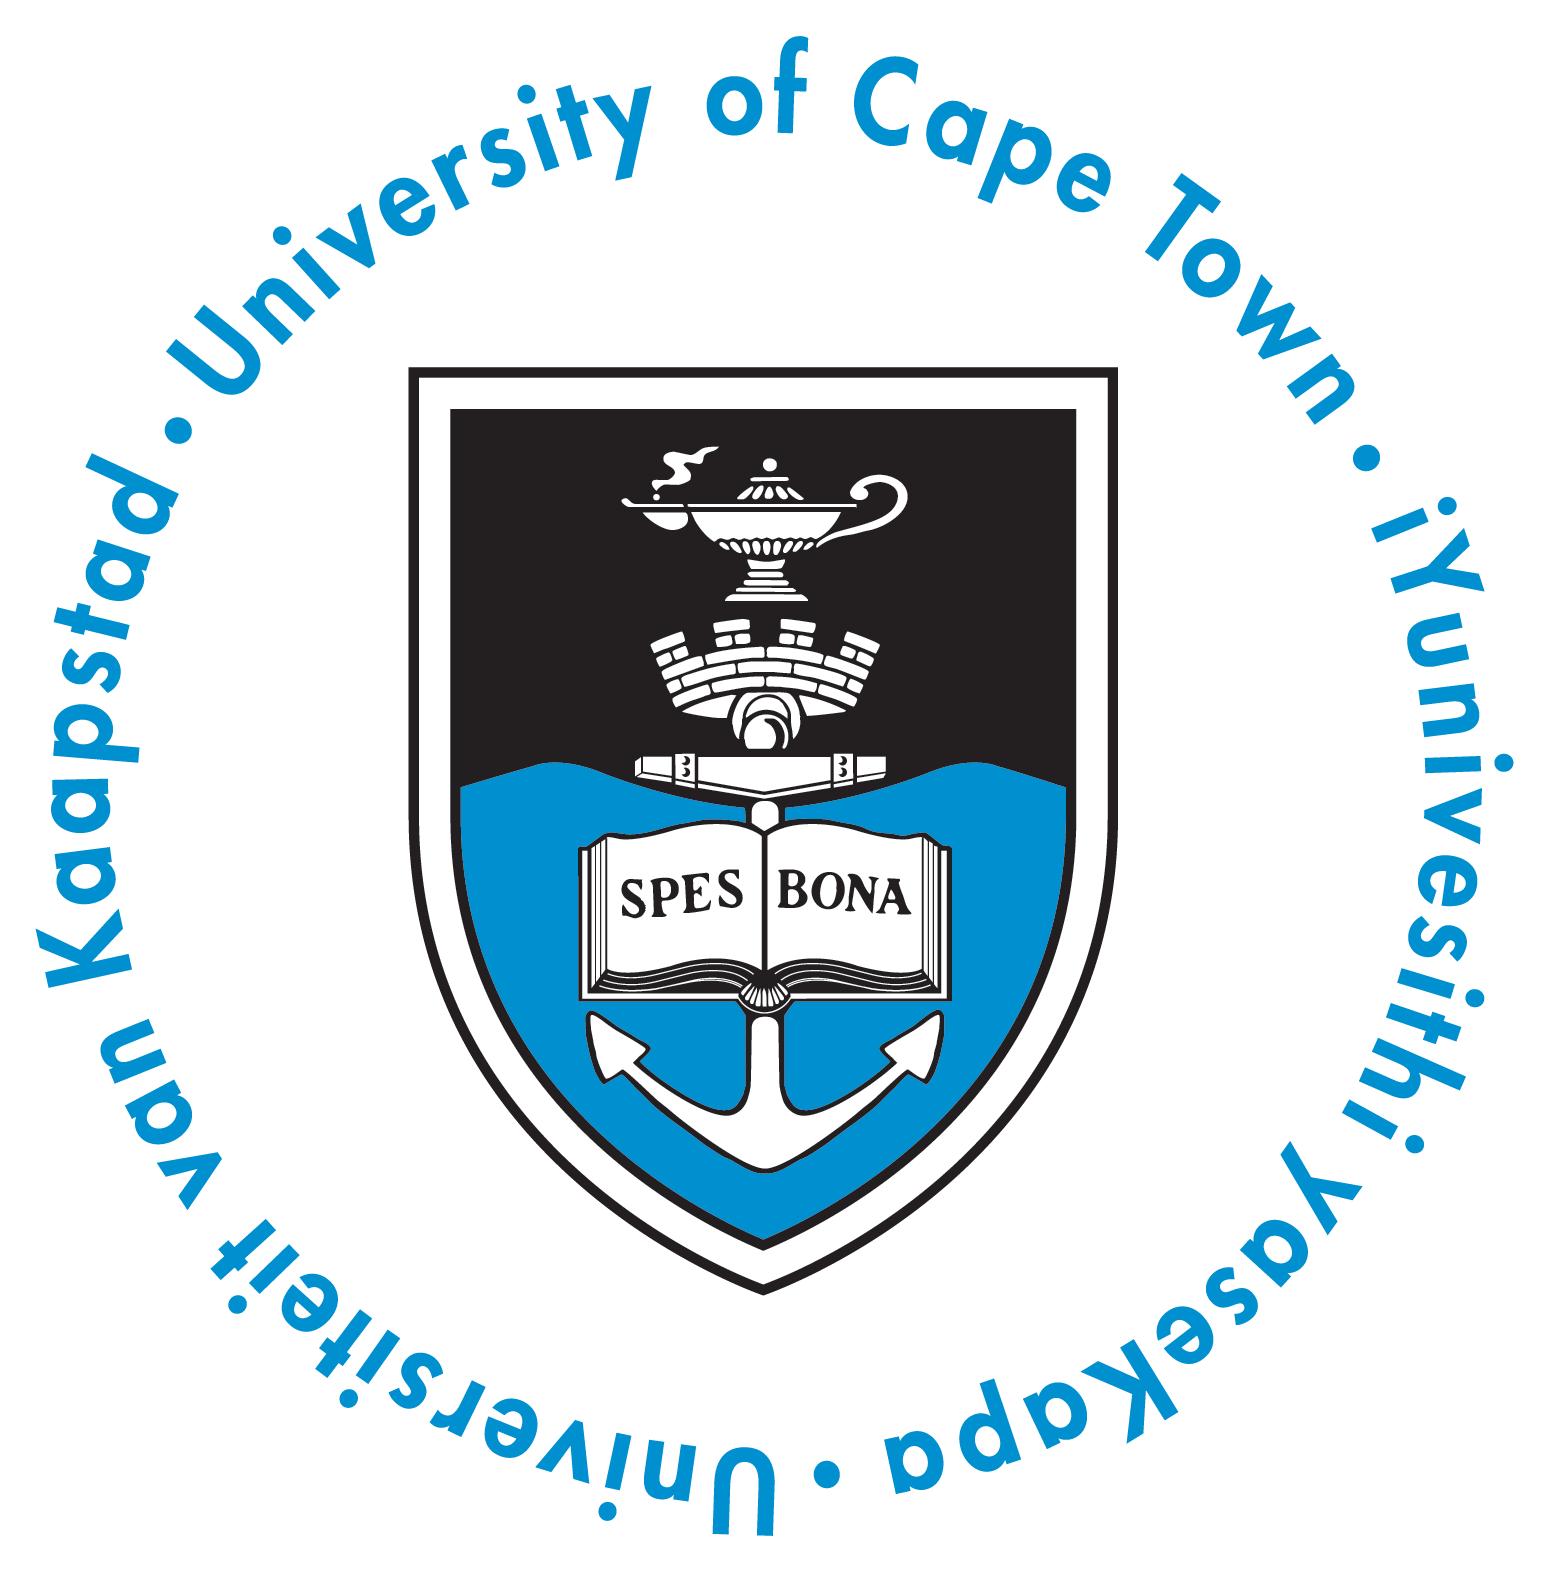 Die University of Cape Town und das Department für Informationssysteme